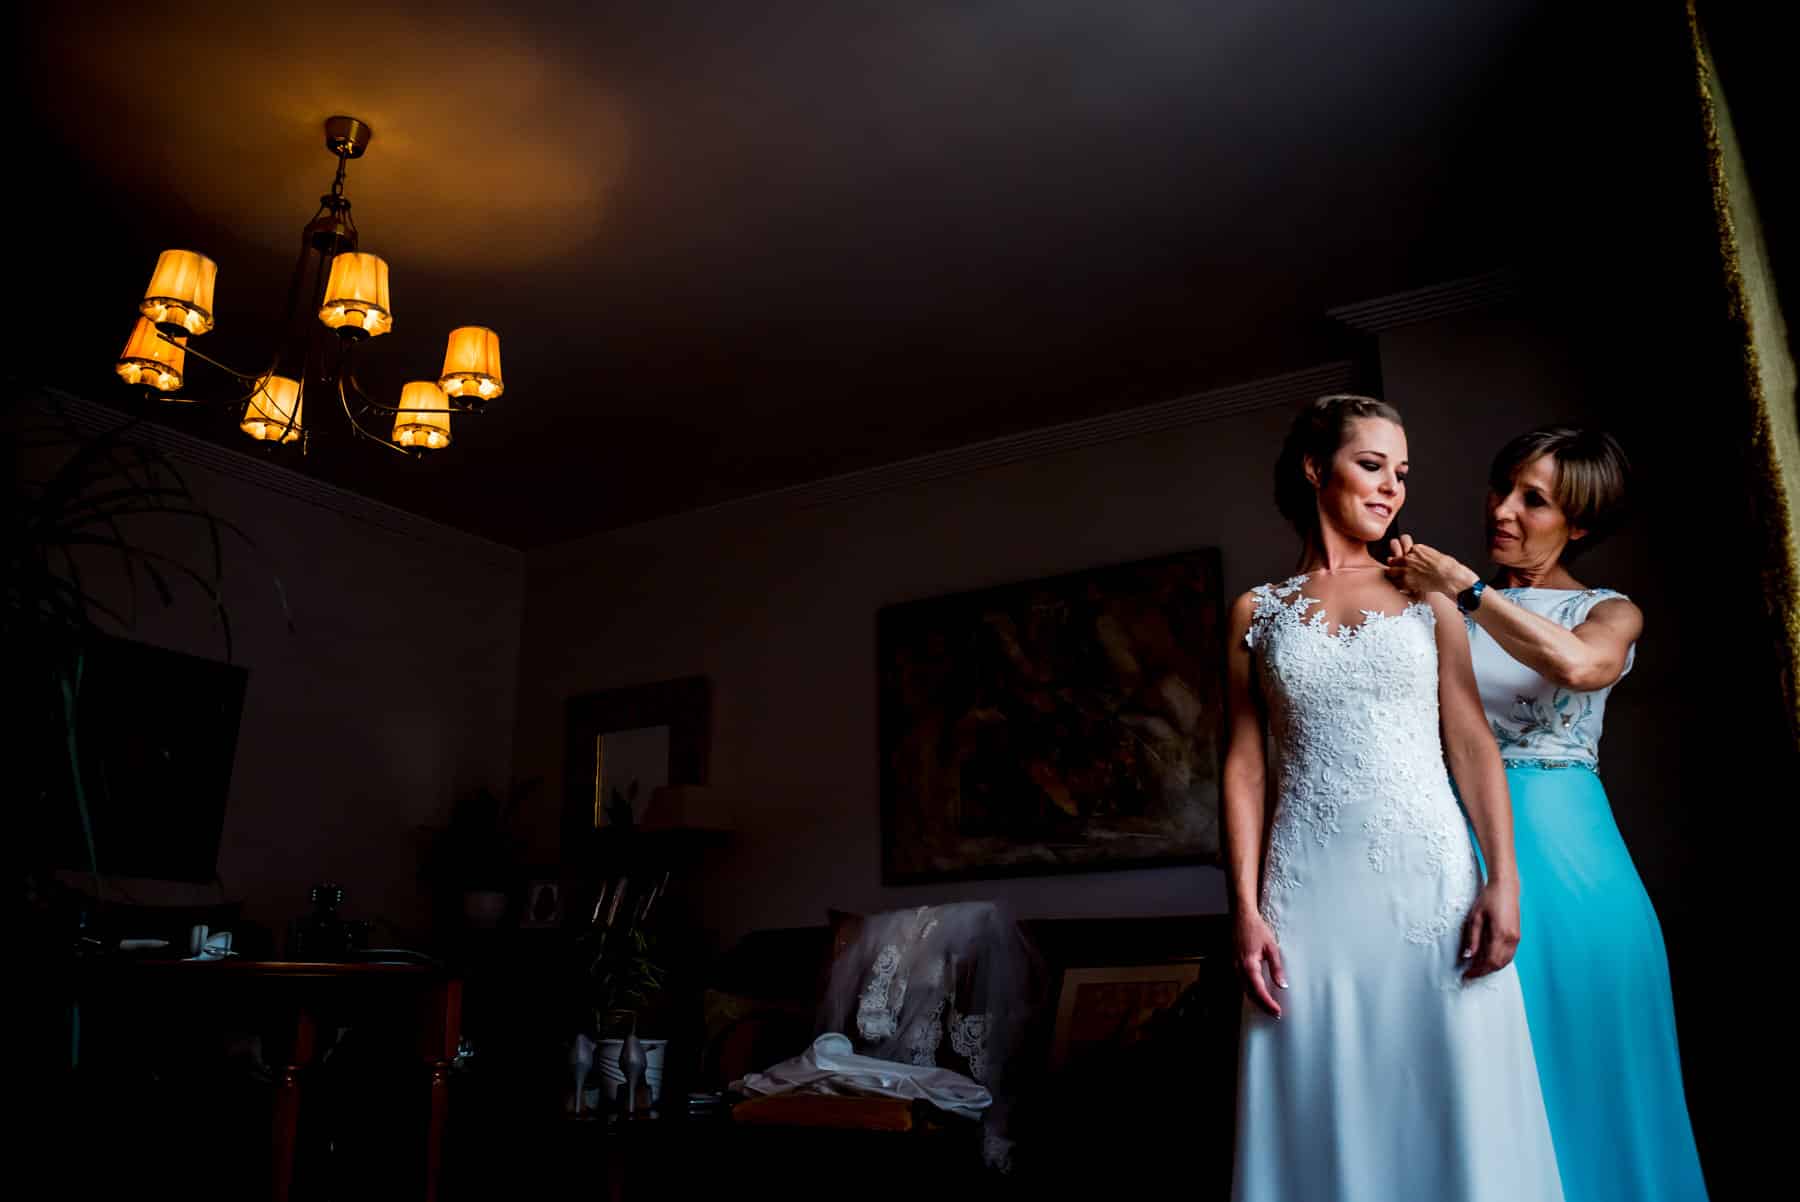 Fotografía de boda en León, Boda en la Finca Valdemora, Fotografos de boda en León, Tul y Plumas Photography